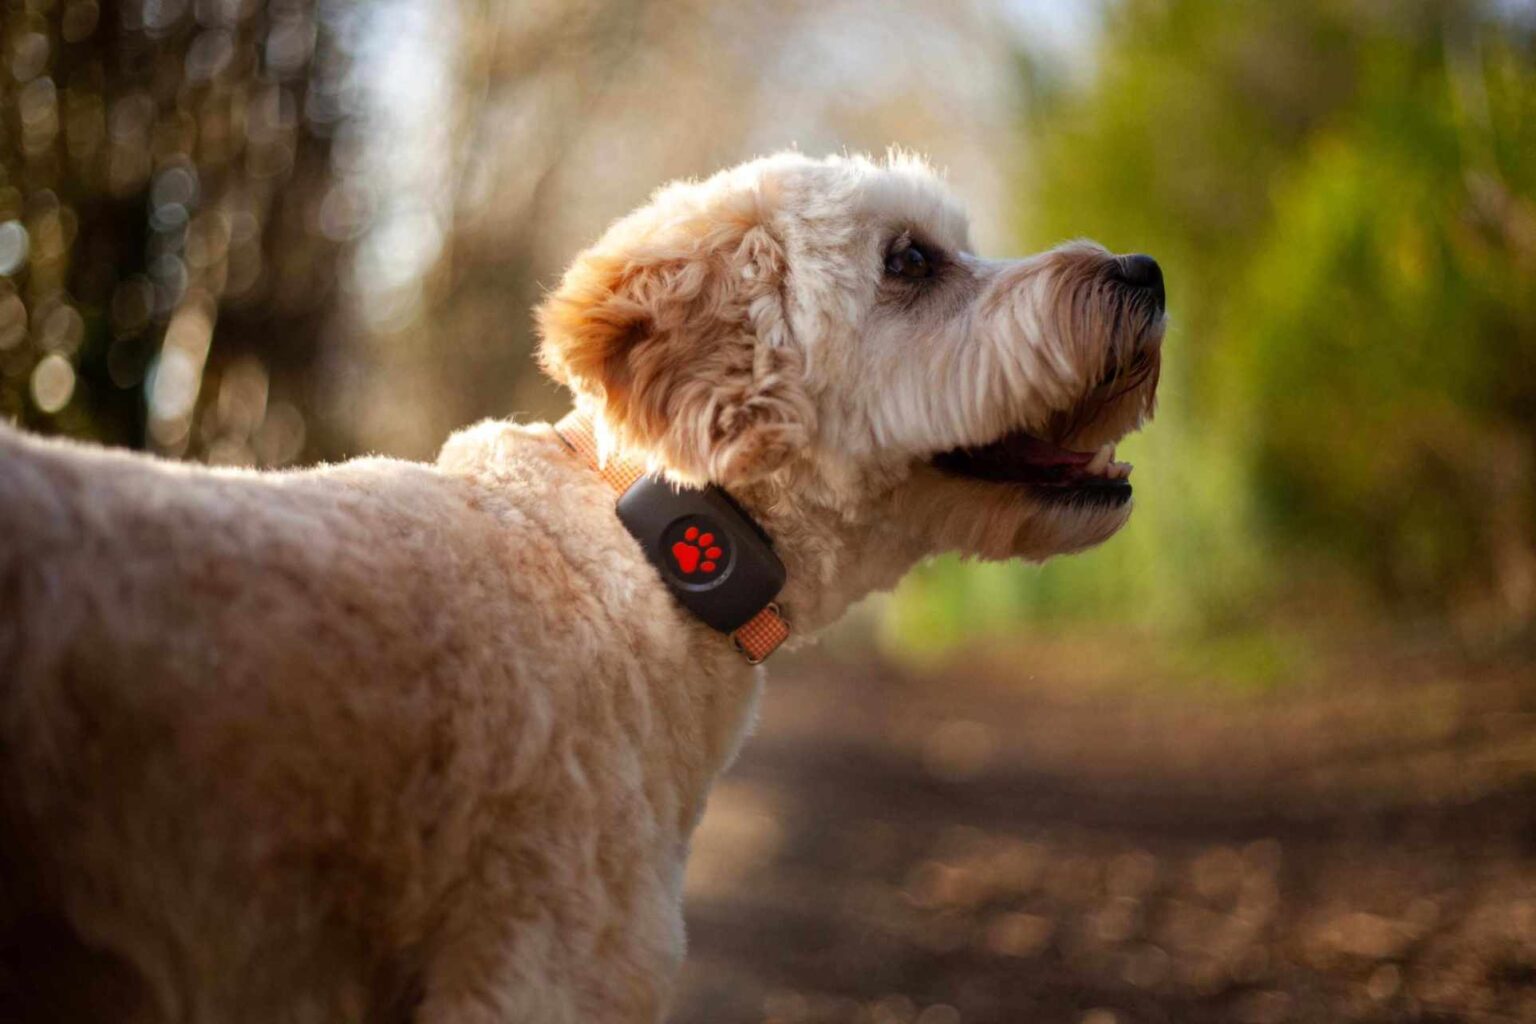 Peut-on obtenir un implant GPS ou une puce électronique pour les chiens ?